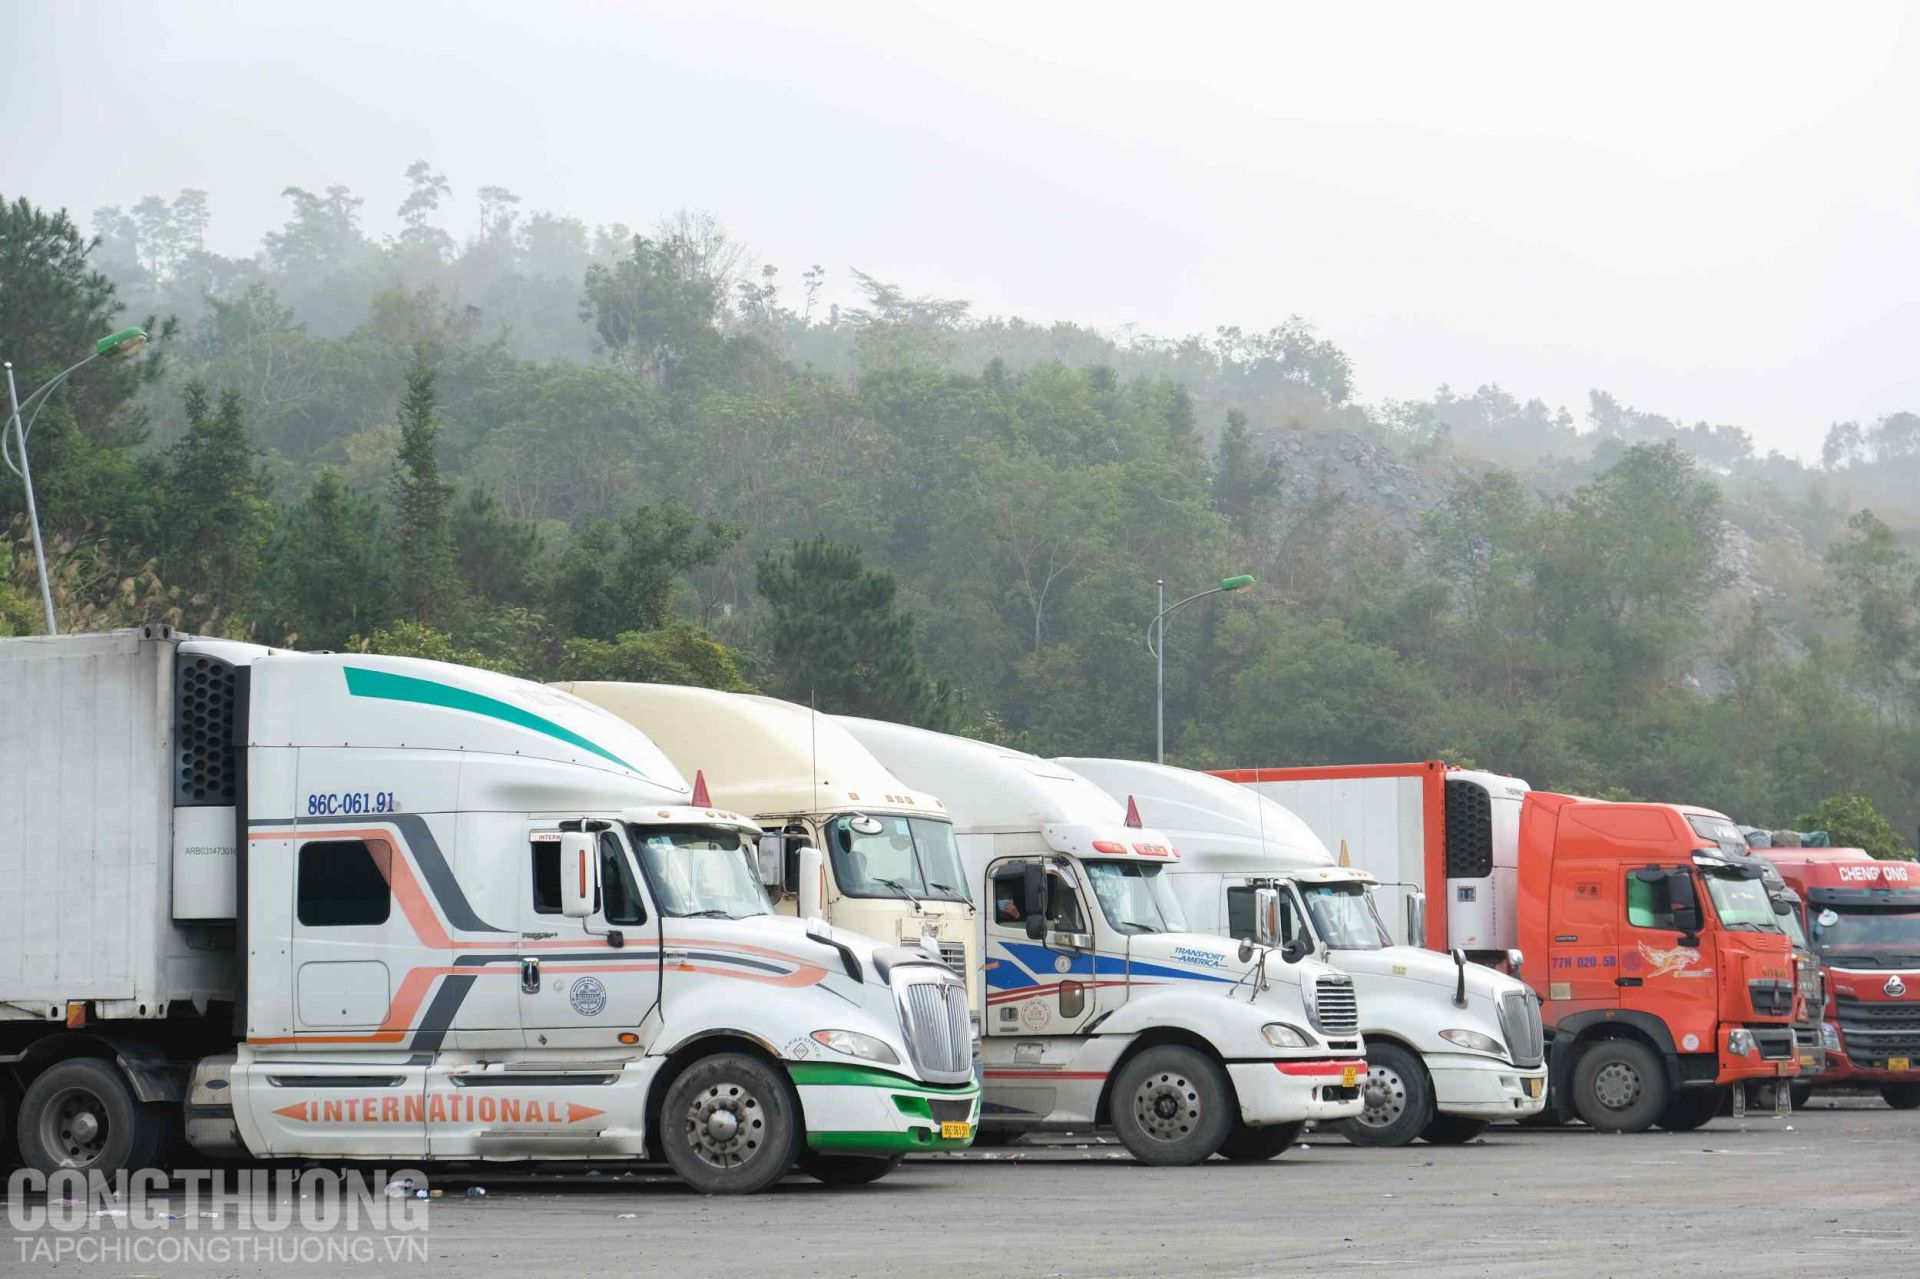 Tính đến 8h00 sáng ngày 23 tháng 01 năm 2022, tổng số lượng xe còn tồn tại các cửa khẩu tại tỉnh Lạng Sơn là 484 xe